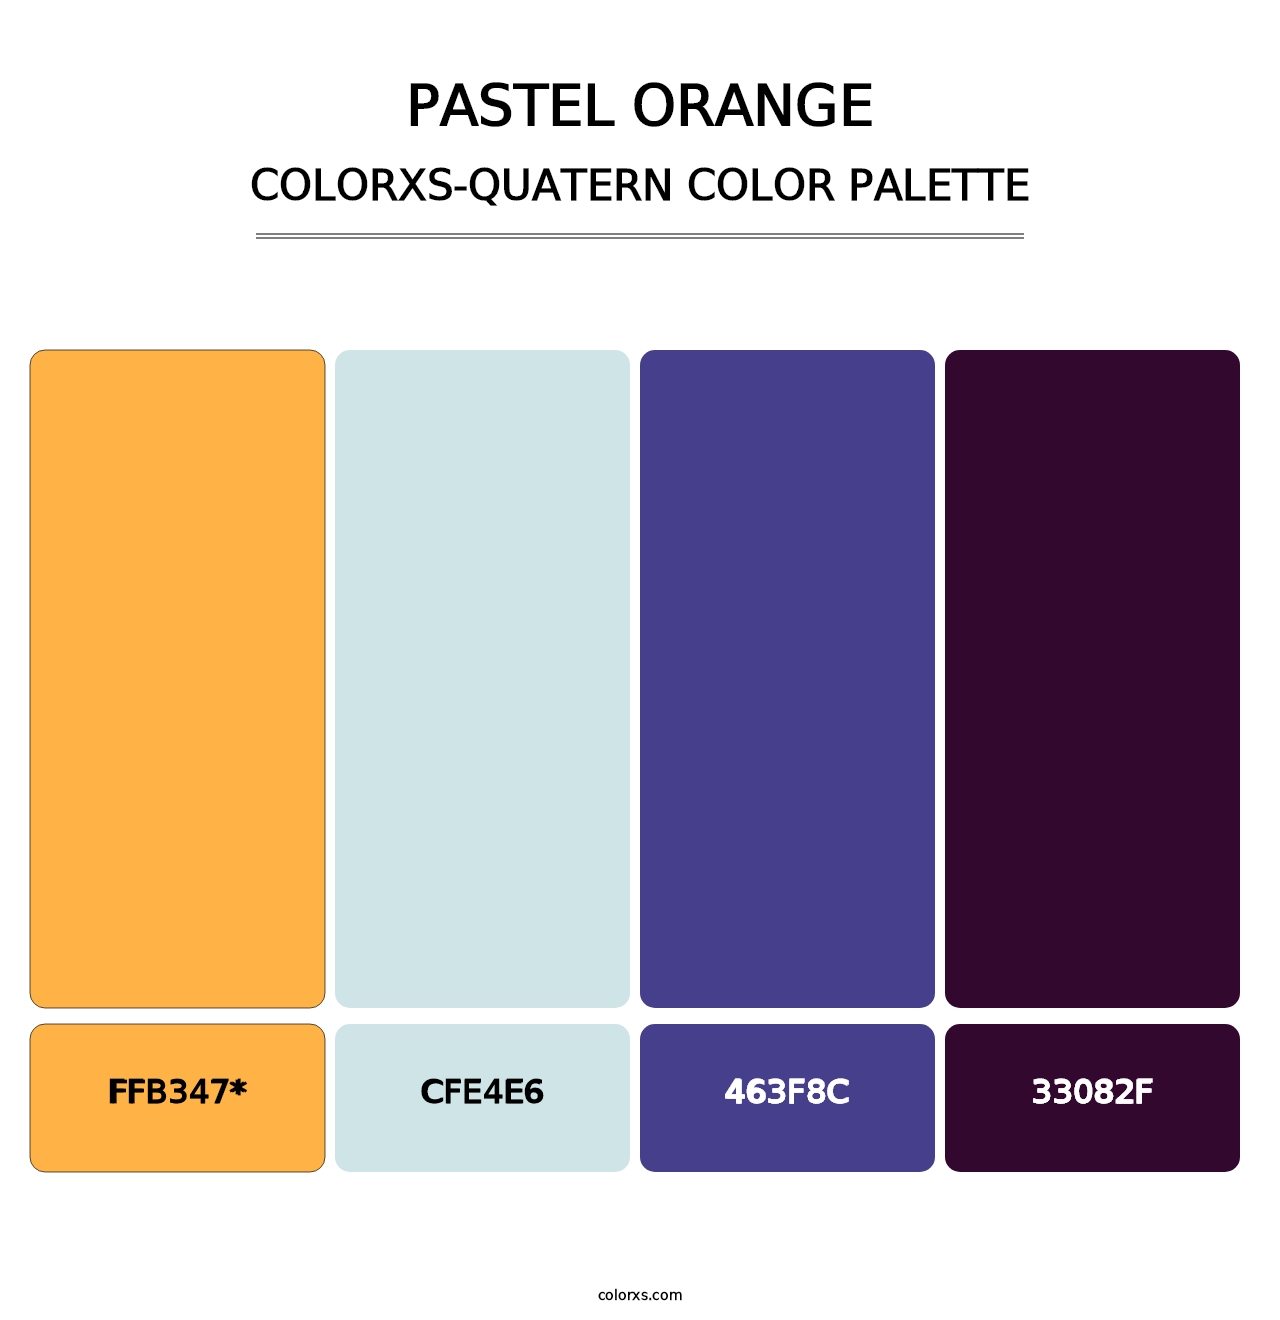 Pastel Orange - Colorxs Quatern Palette